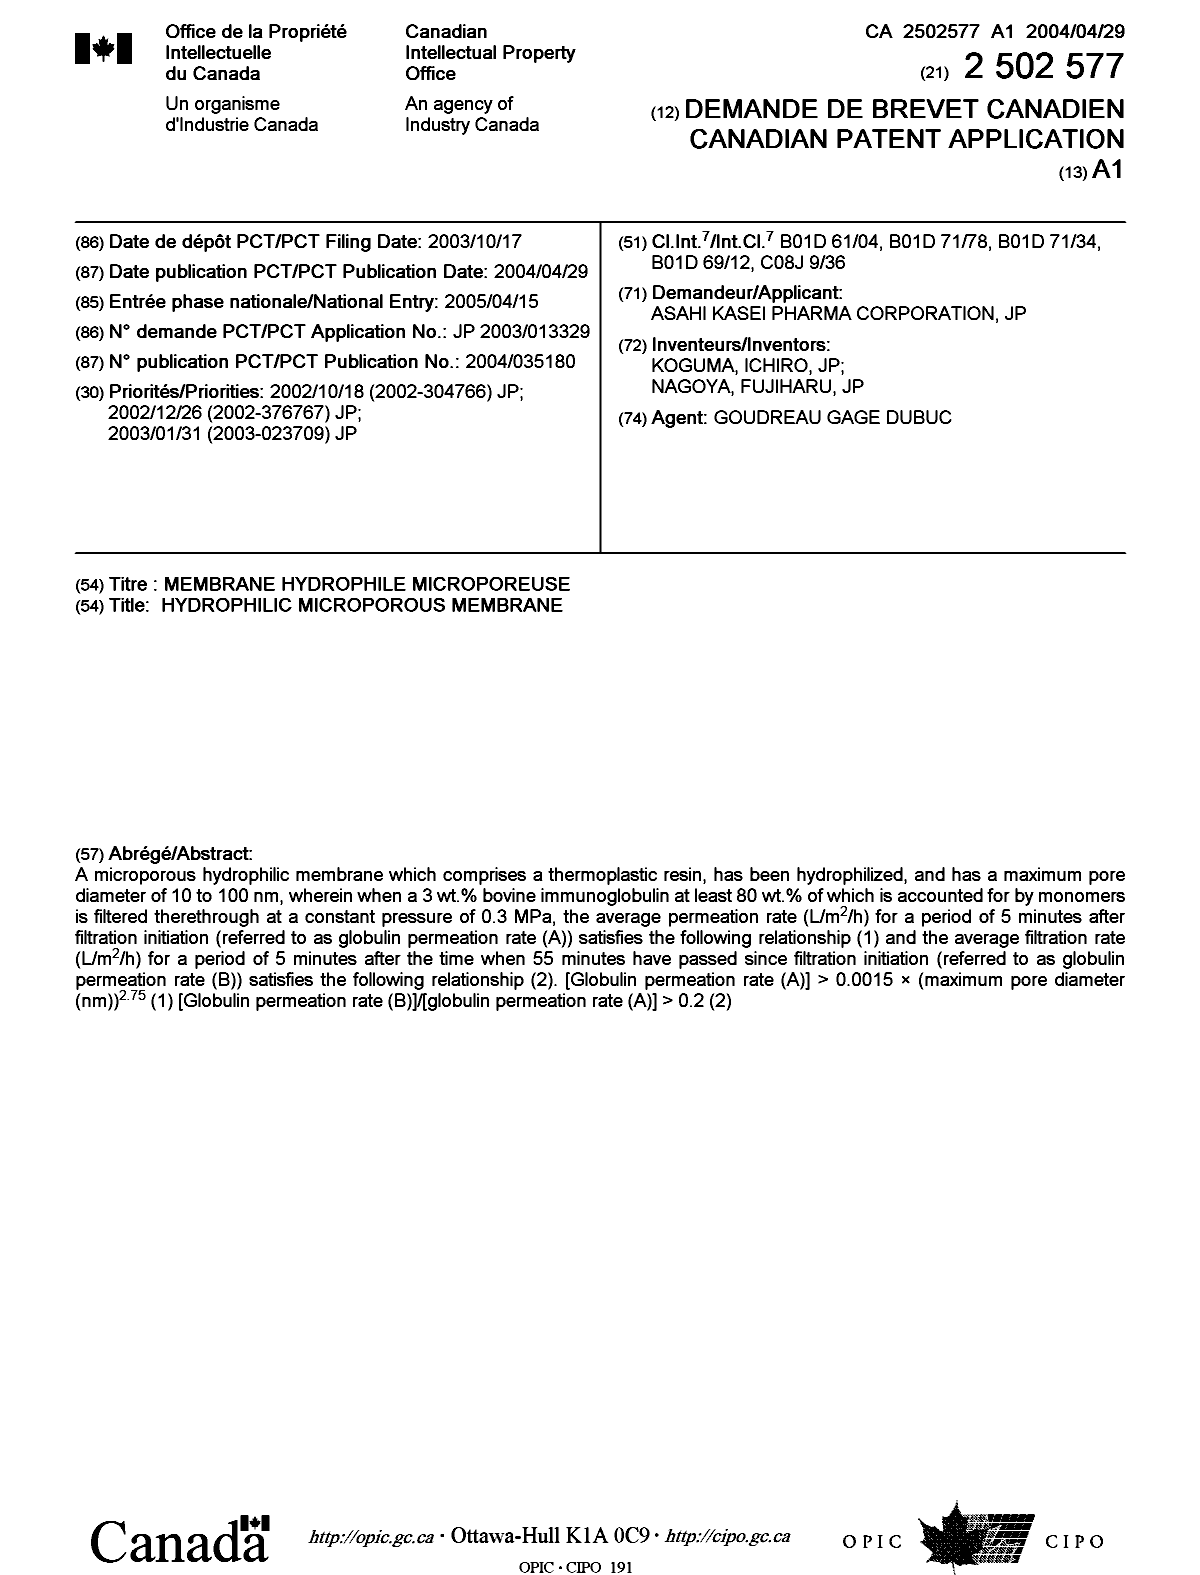 Document de brevet canadien 2502577. Page couverture 20050713. Image 1 de 1